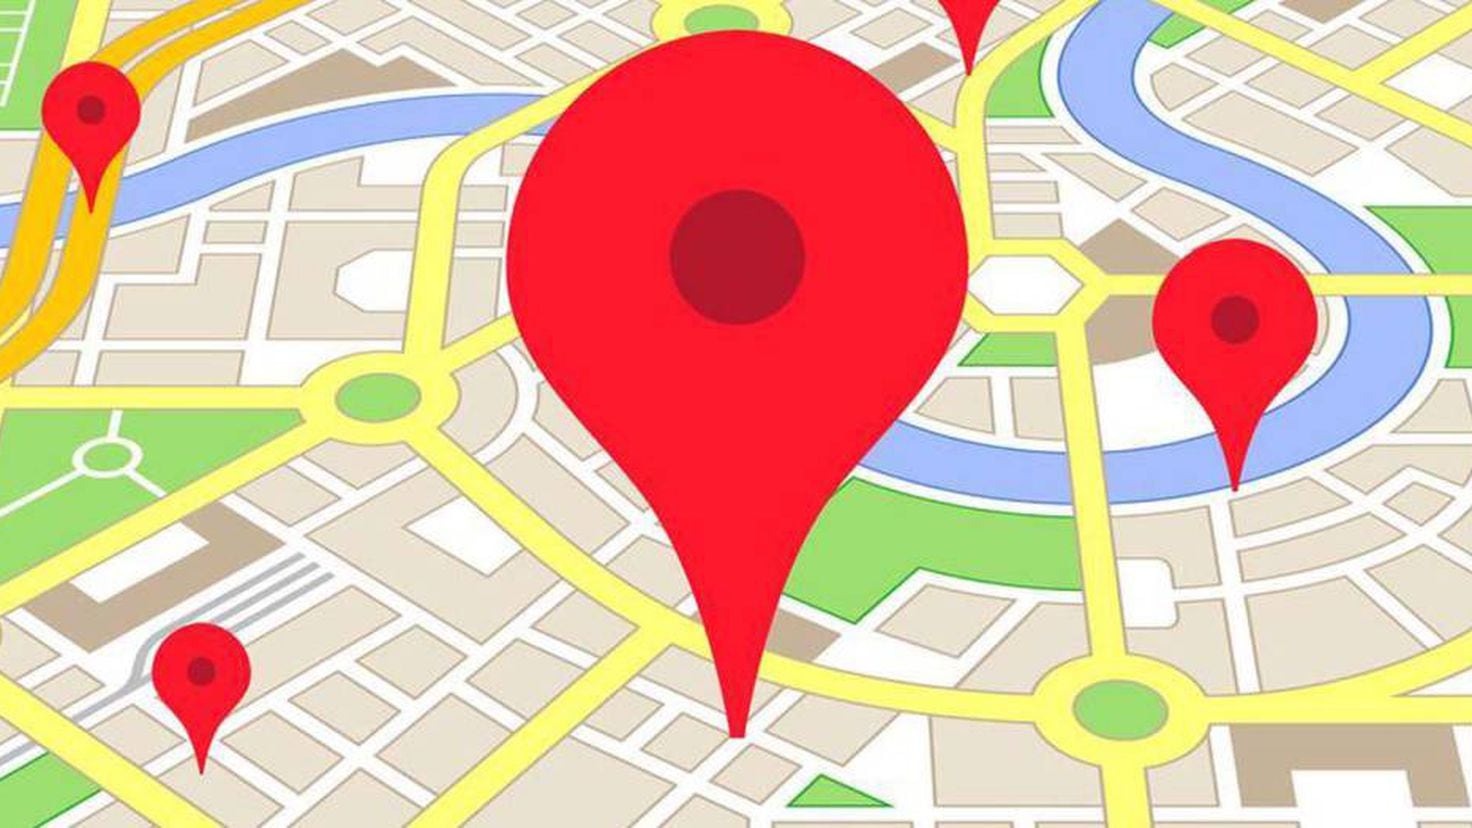 Местоположение х. Гугл карты. Метка на карте. Google Maps карты Google. Google Maps картинка.